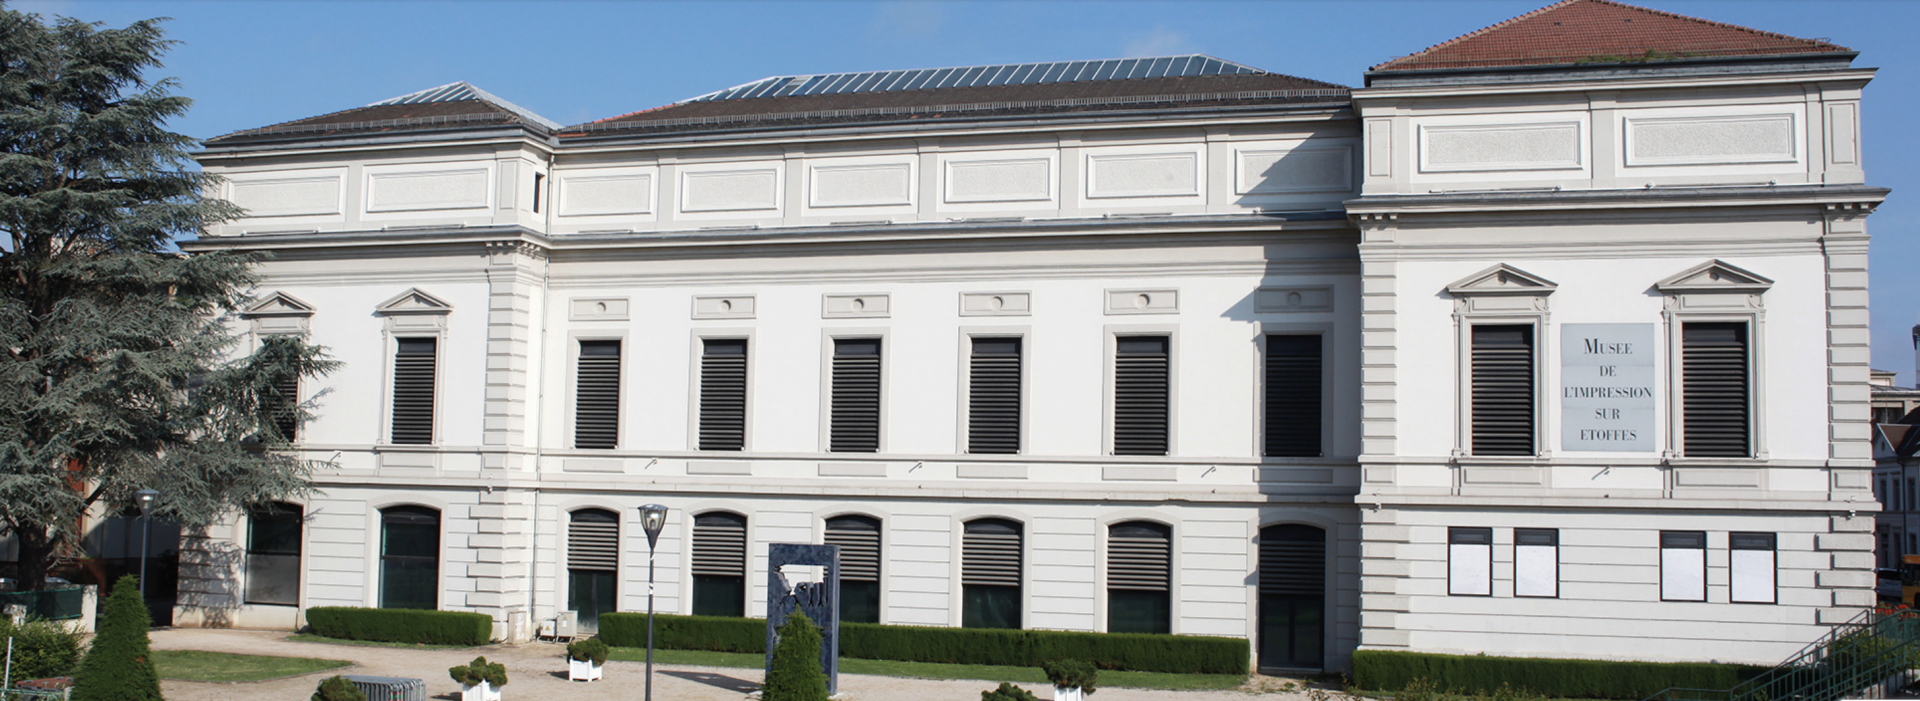 Visitez le Musée de l'Etoffe à Mulhouse avec un chauffeur privé - VTC Strasbourg